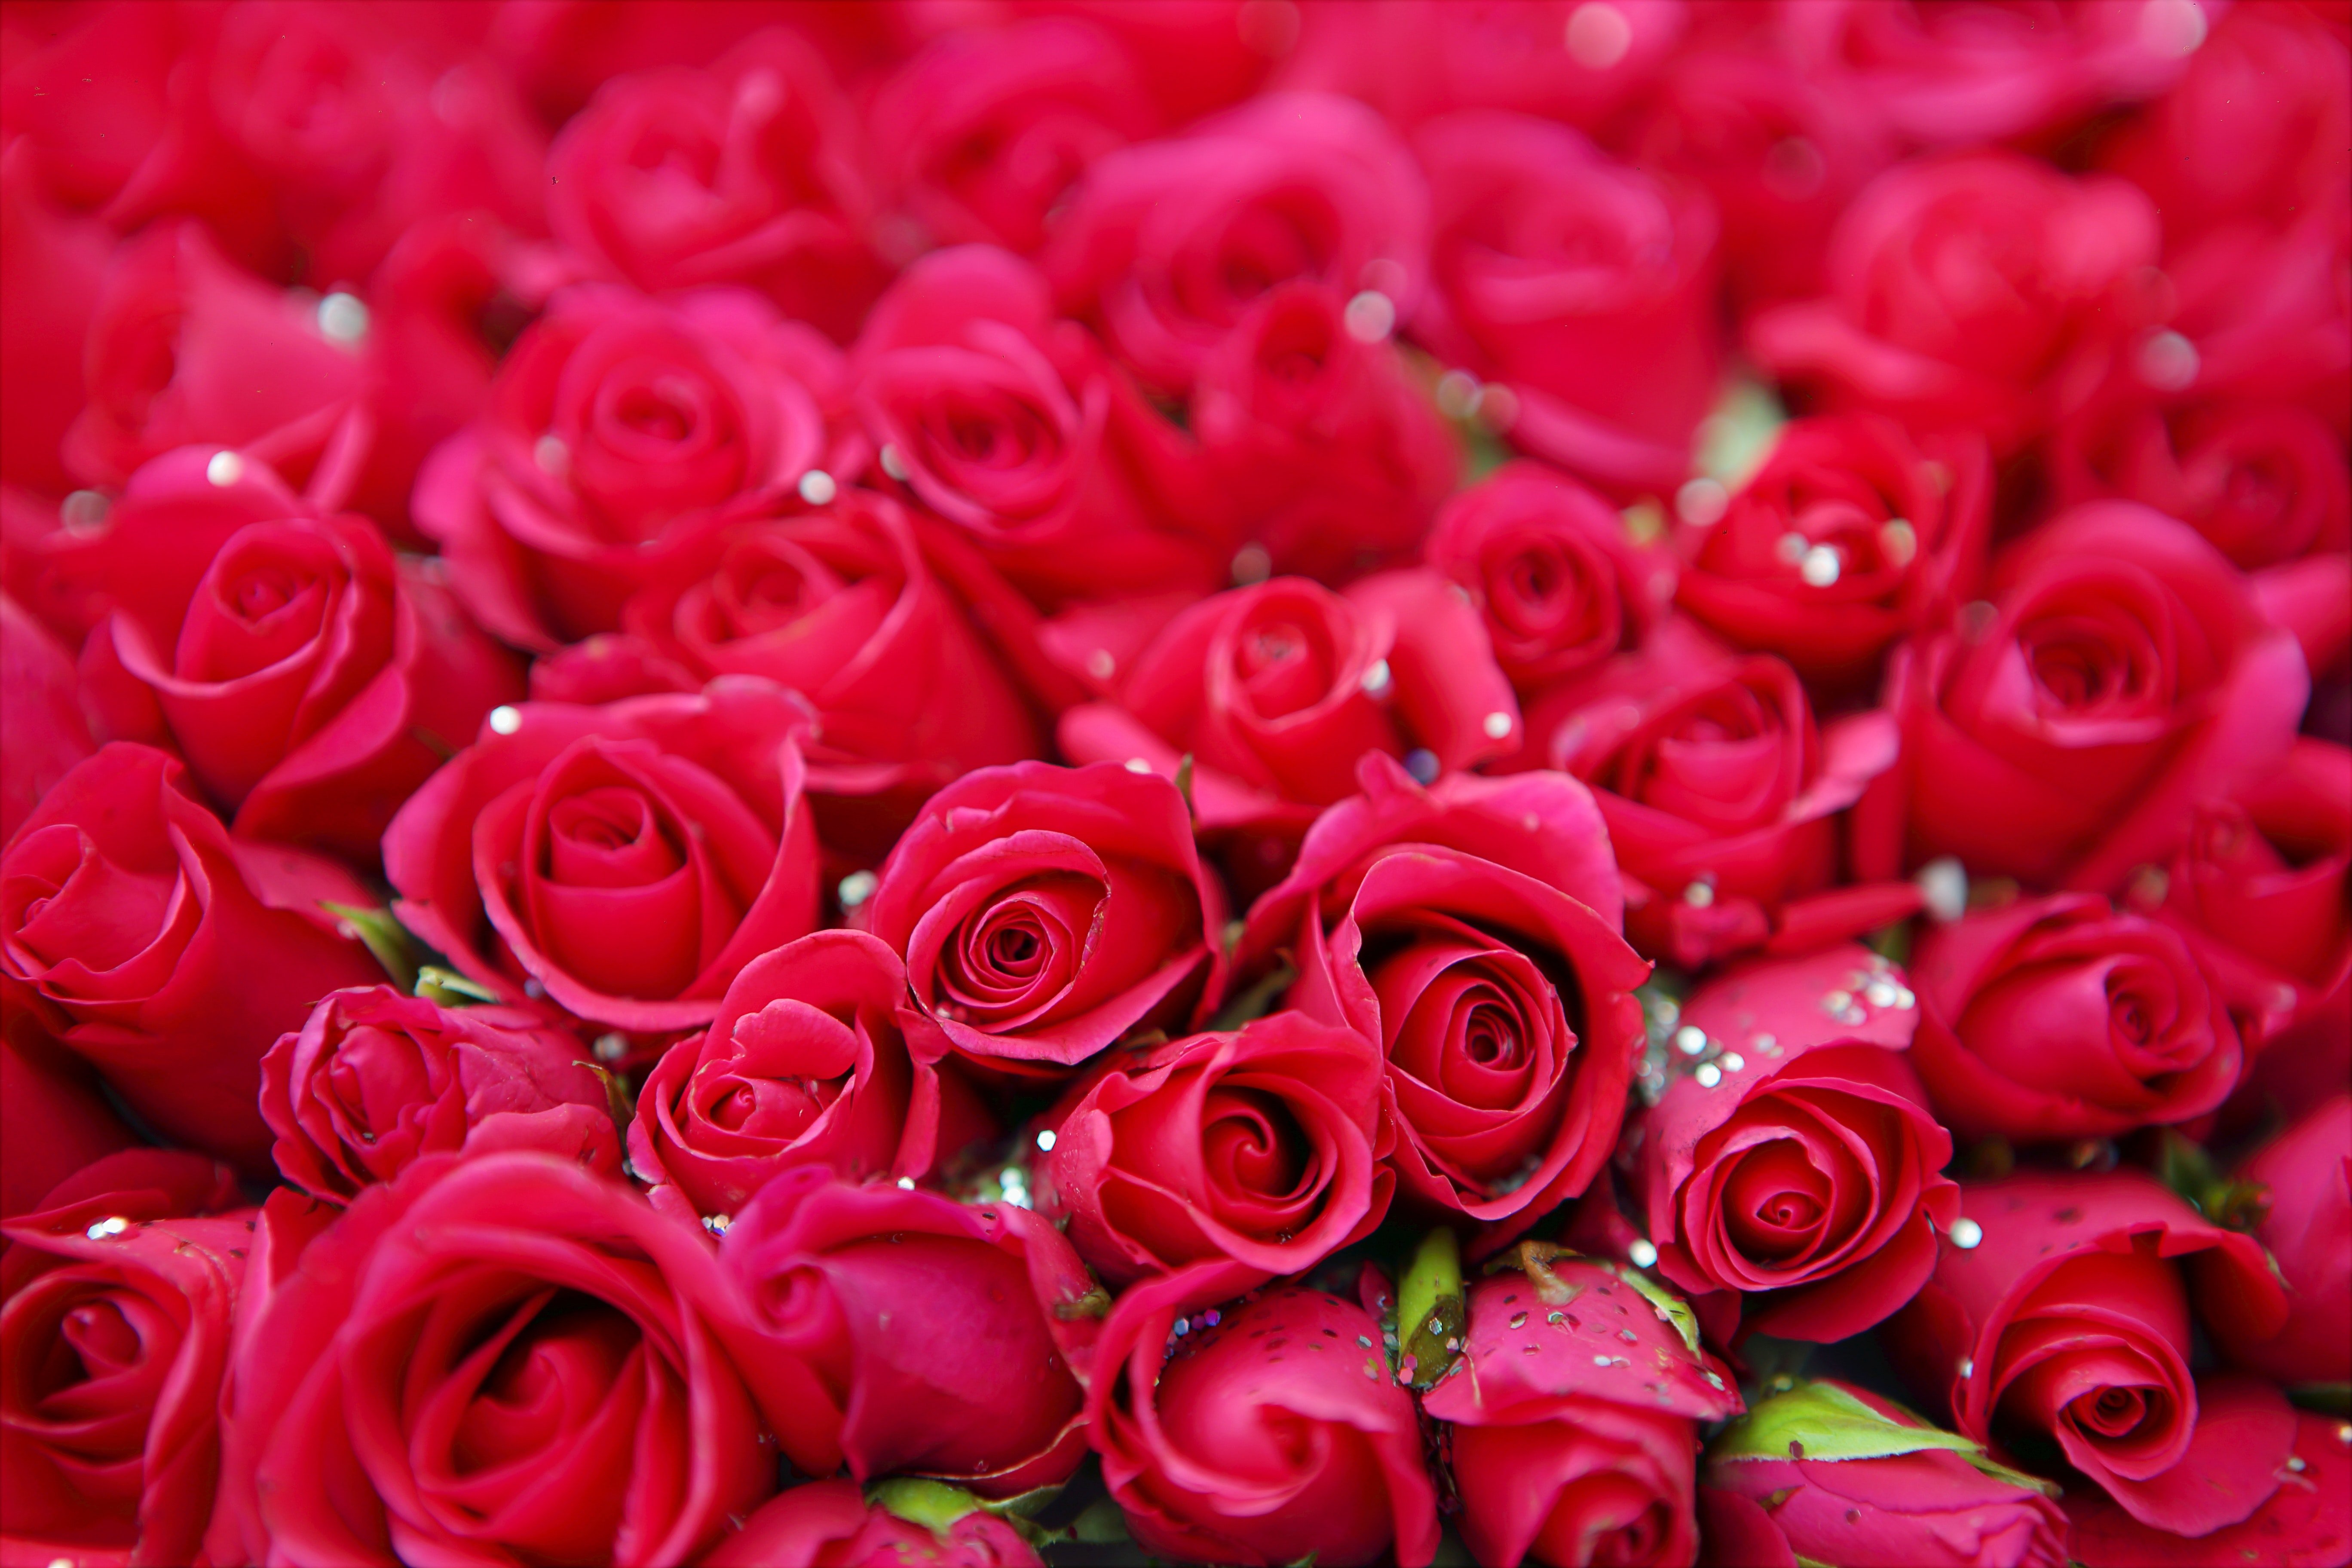 Red roses. | Source: Pexels